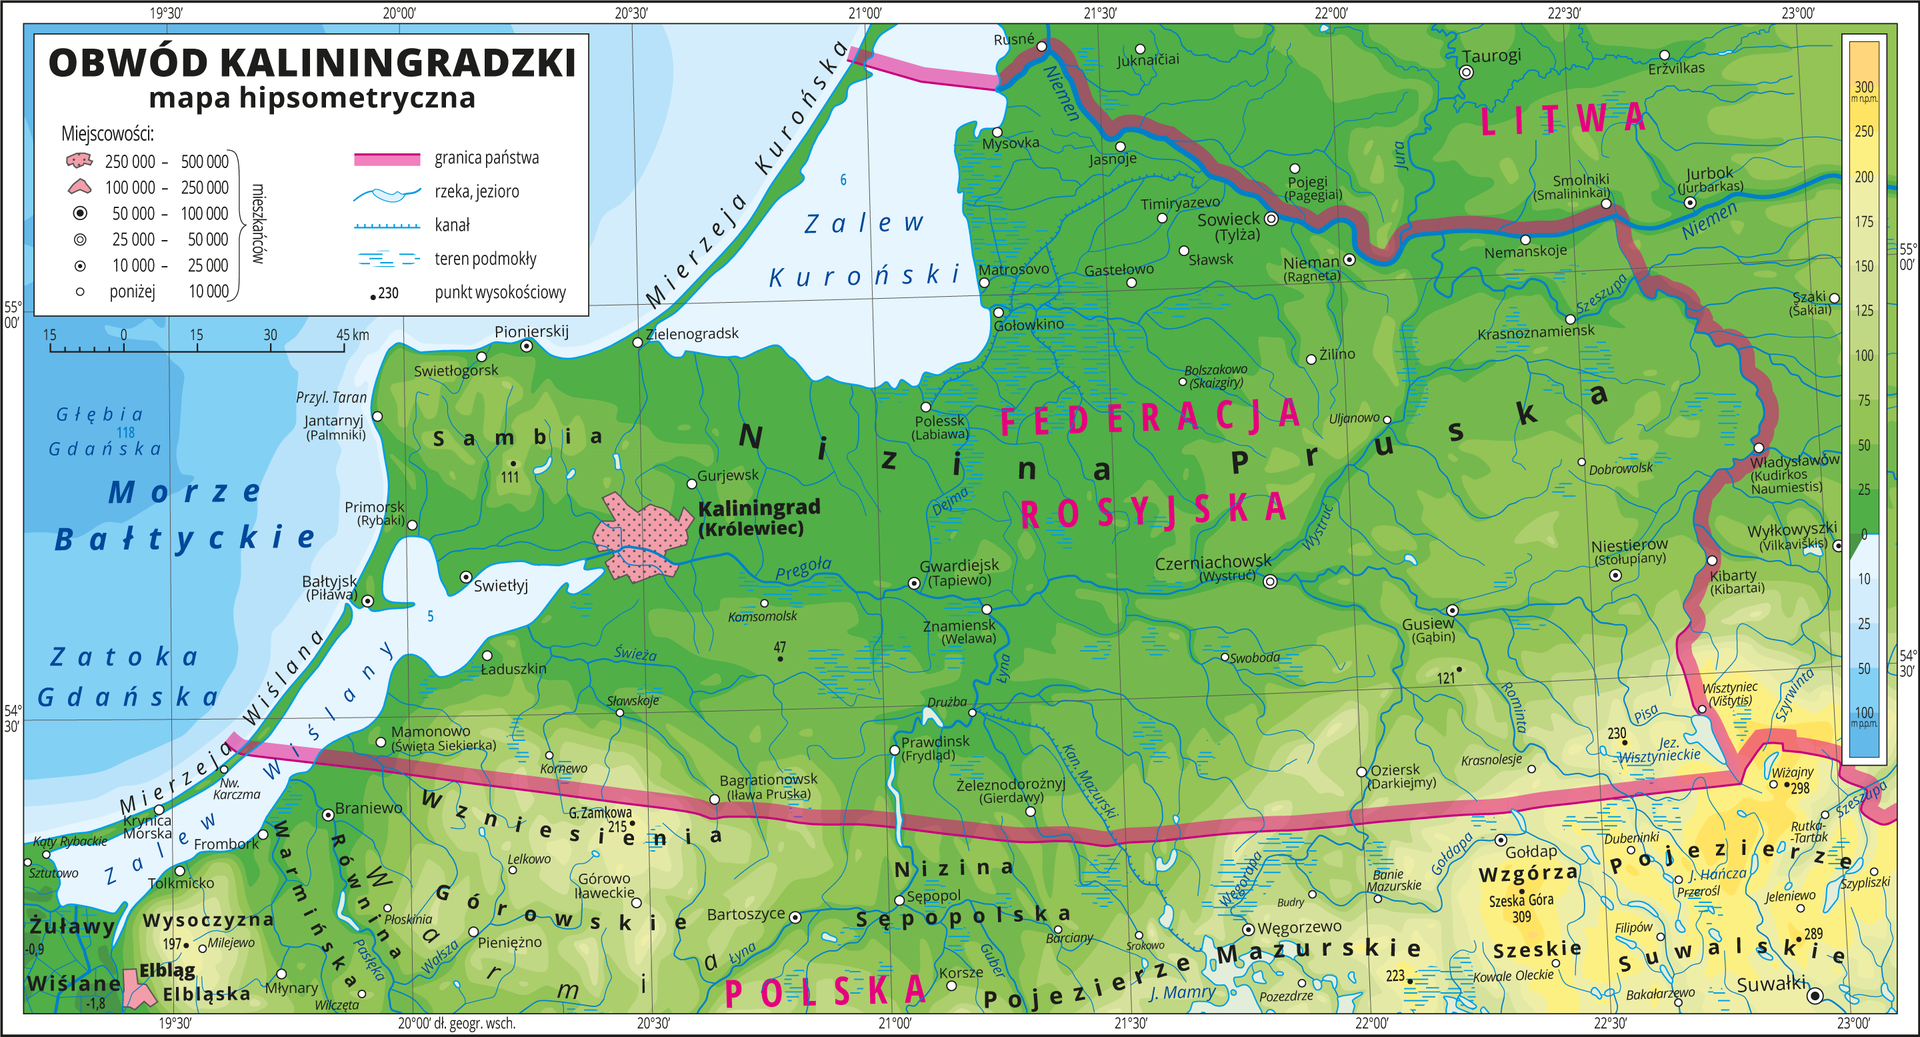 Ilustracja przedstawia mapę hipsometryczną Obwodu Kaliningradzkiego. W obrębie lądów występują obszary w kolorze zielonym na północy i żółtym na południu. W lewym górnym rogu mapy Morze Bałtycki, Zatoka Gdańska, Zalew Wiślany i Zalew Kuroński zaznaczono kolorem niebieskim i opisano. Na mapie opisano nazwy mierzei i wzgórz, wzniesień, nizin, pojezierzy, jezior i rzek. Oznaczono i opisano główne miasta. Oznaczono czarnymi kropkami i opisano punkty wysokościowe. Różową wstążką przedstawiono granice państw. Kolorem czerwonym opisano państwa sąsiadujące z Obwodem Kaliningradzkim. Mapa pokryta jest równoleżnikami i południkami. Dookoła mapy w białej ramce opisano współrzędne geograficzne co pół stopnia. W legendzie umieszczono i opisano znaki użyte na mapie.